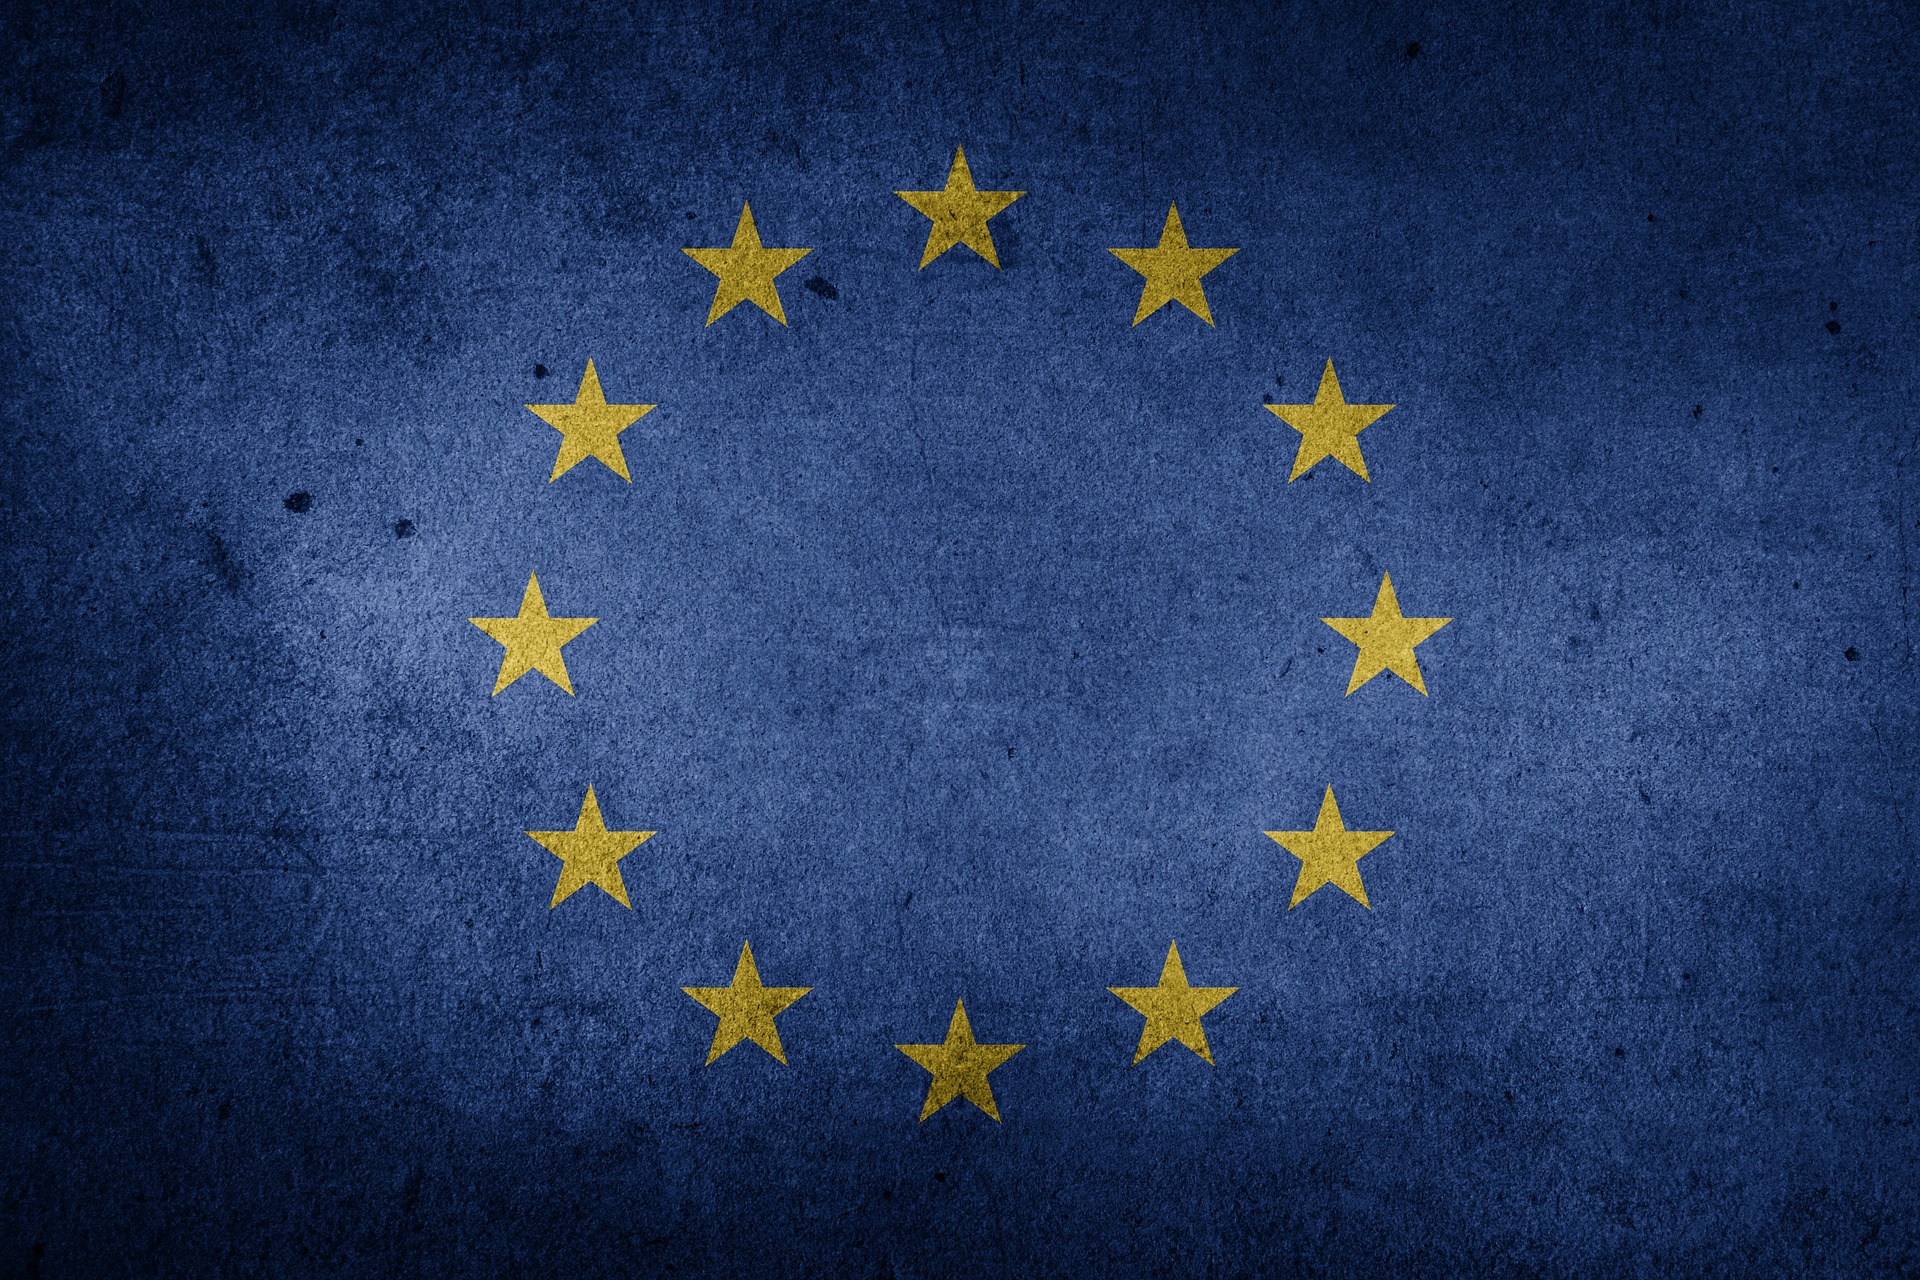 Le drapeau de l'Union européenne. © Chickenonline/Pixabay